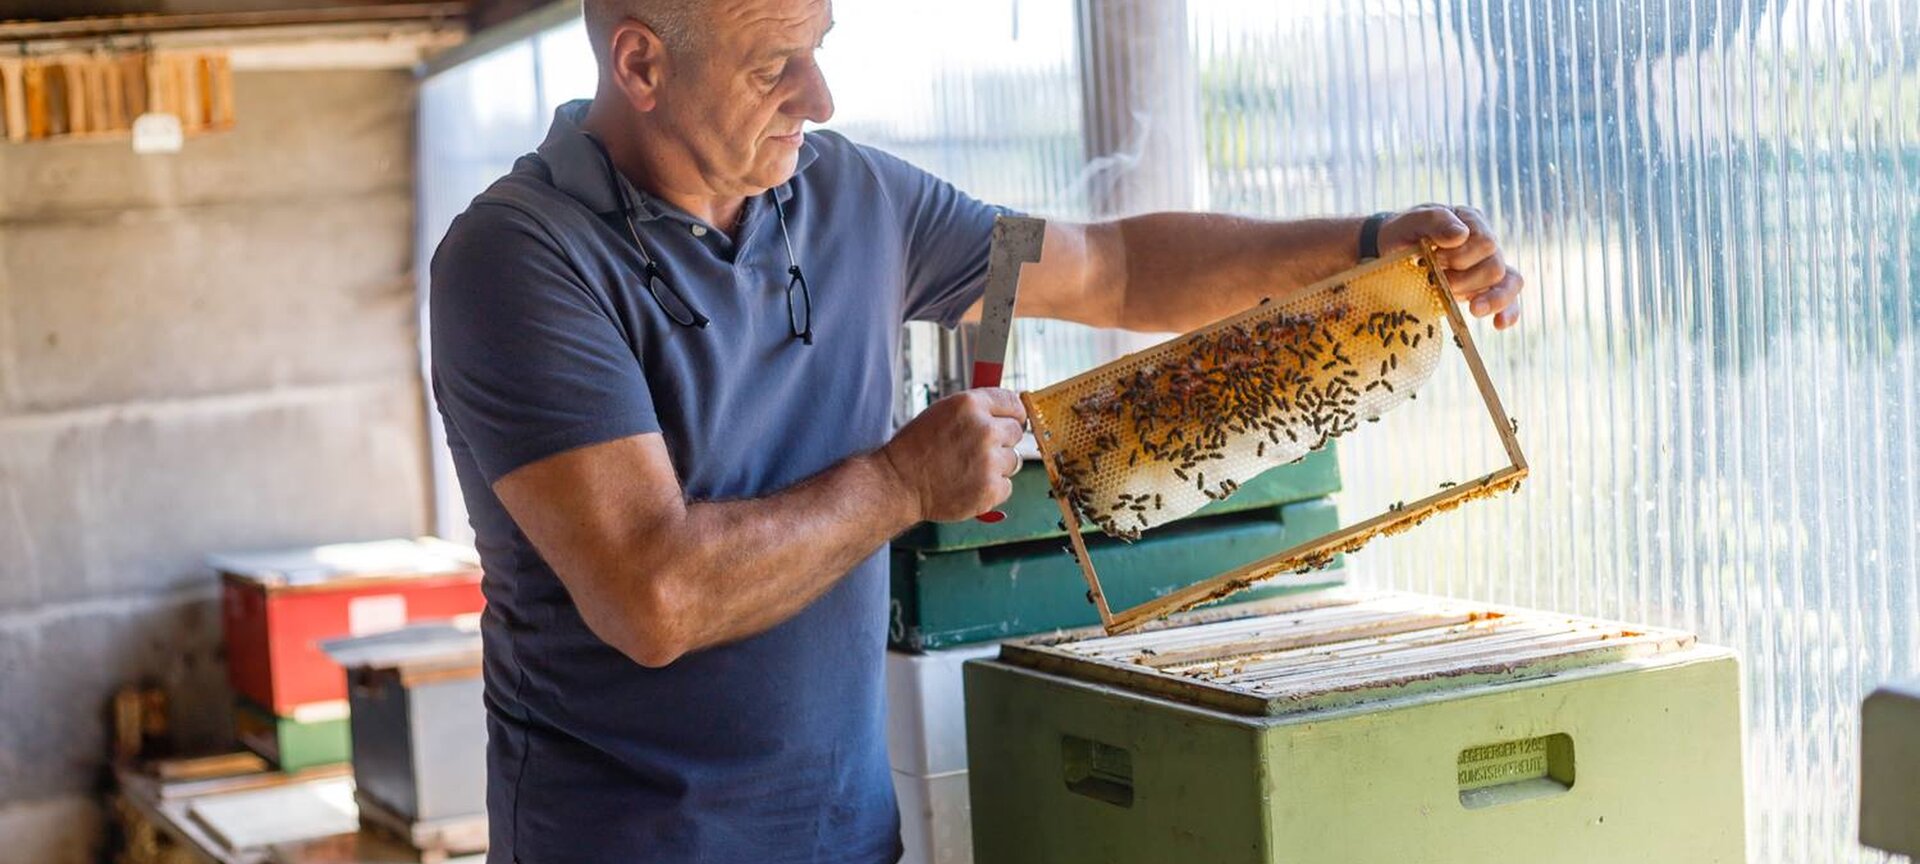 Imkerij 't Fleurtje Limburgse Honing soorten - honing productie eigen raat